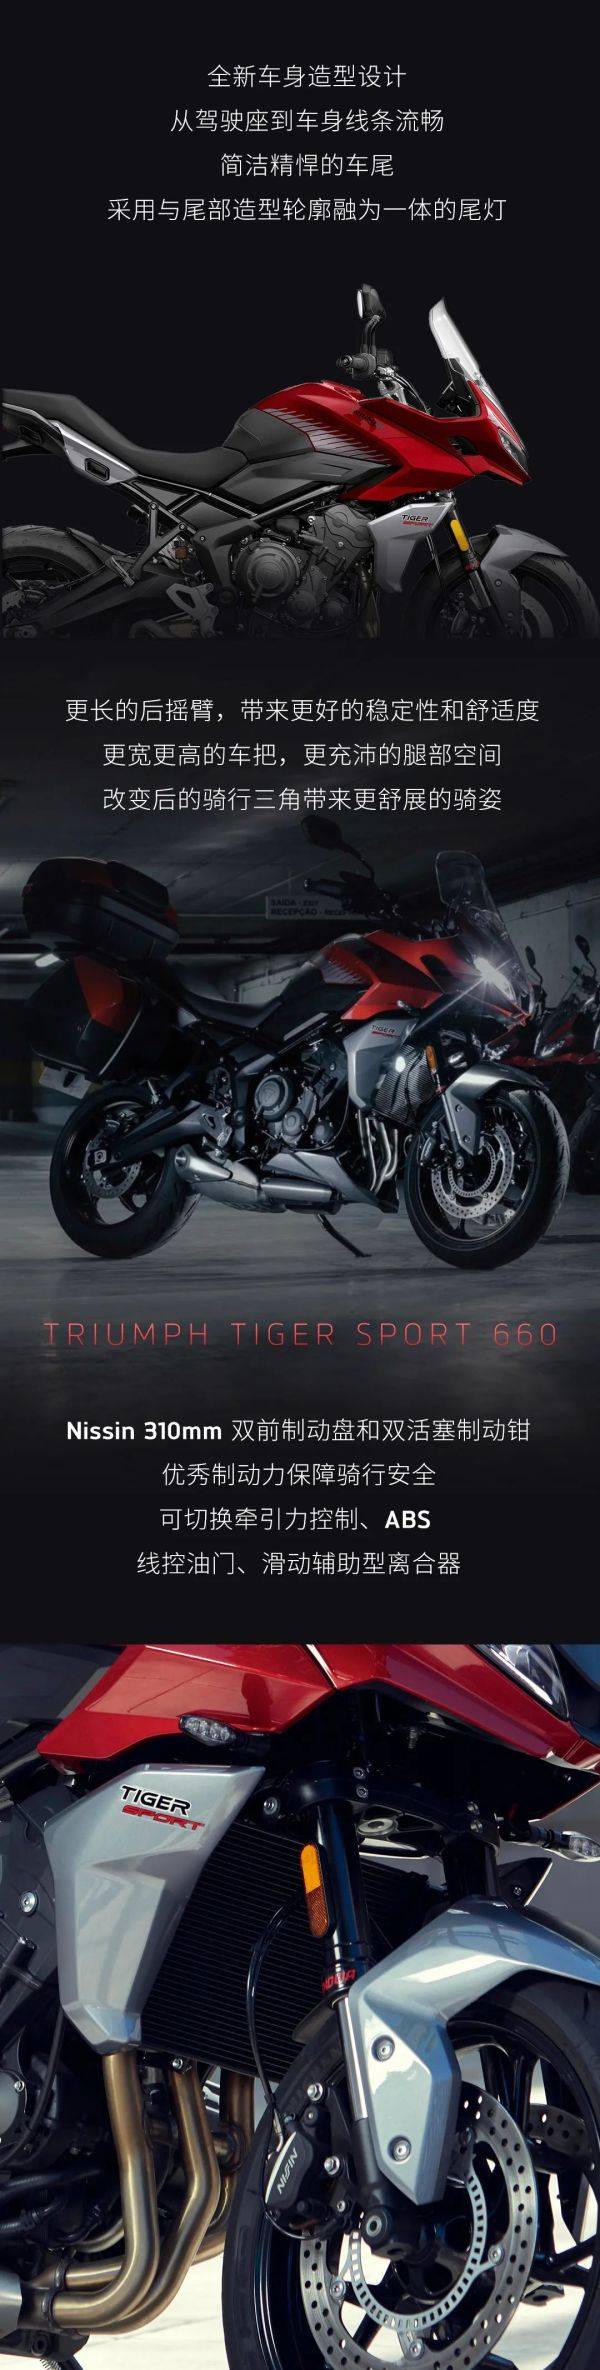 凯旋Triumph TIGER SPORT 660 正式发布!售价:105895元